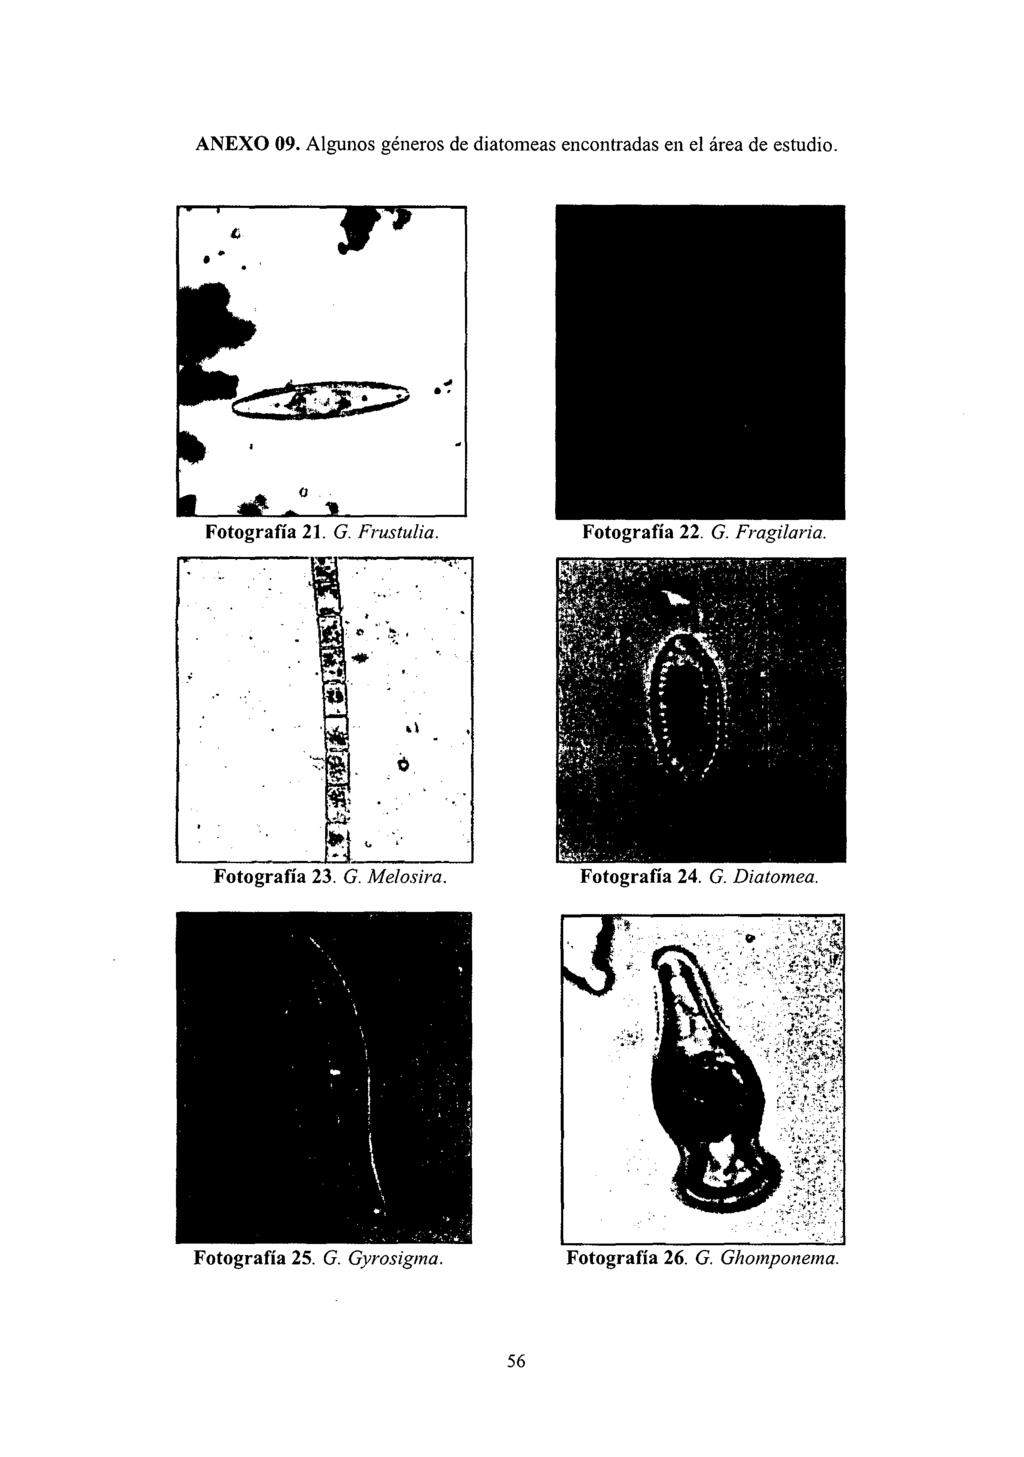 ANEXO 09. Algunos géneros de diatomeas encontradas en el área de estudio. ~ Fotografía 21. G. Frustulia. Fotografía 22. G. Fragilaria.